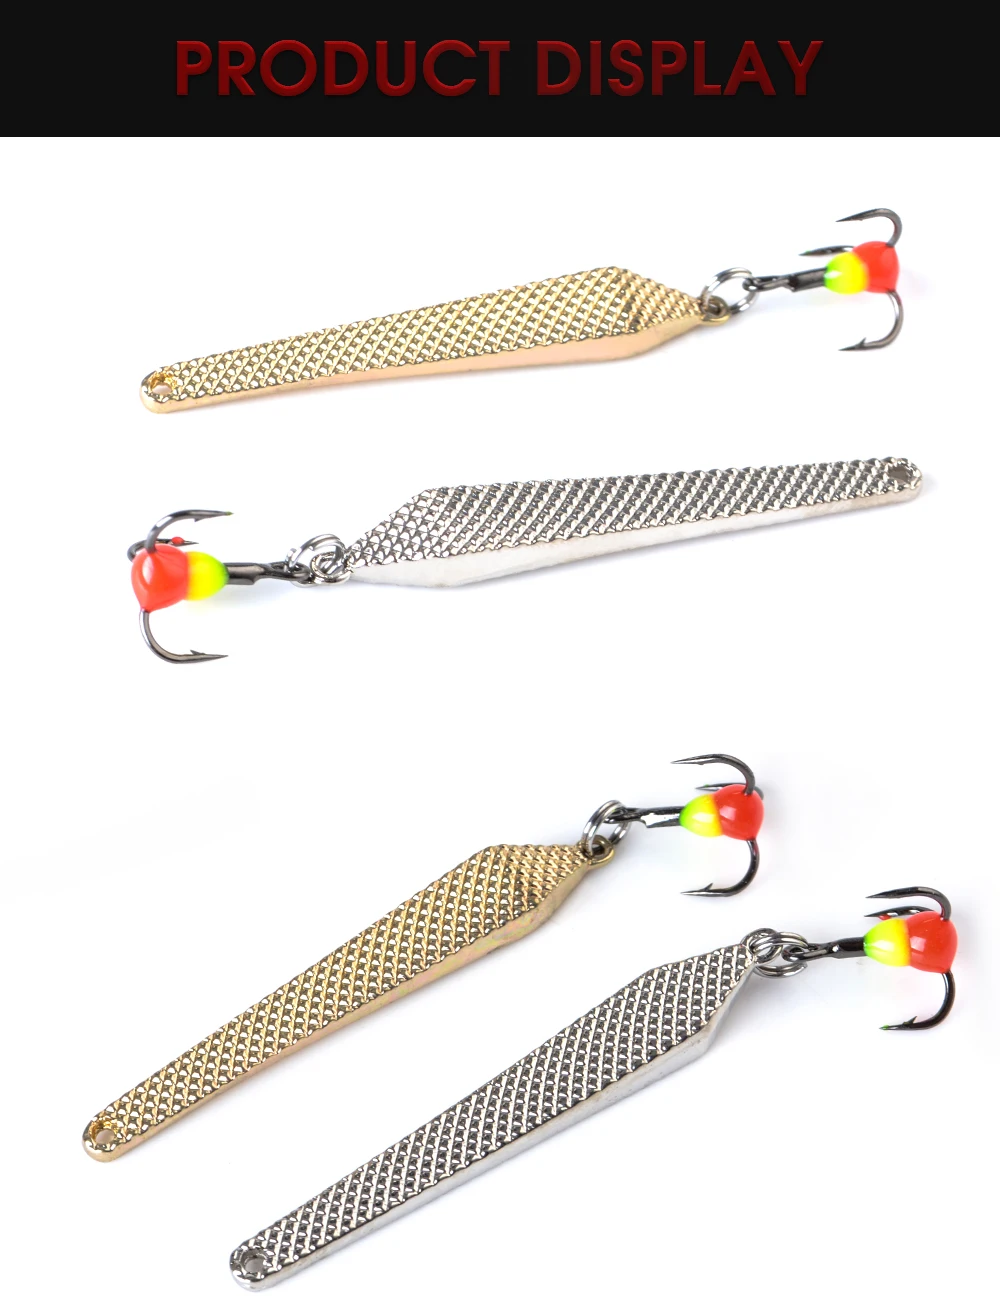 FTK 1 шт. приманка для подледной рыбалки ложка Спиннер зима 55 мм/6 г золотистый, серебристый, металлический рыболовный наживка Тройной крюк жесткие приманки для форель Щука